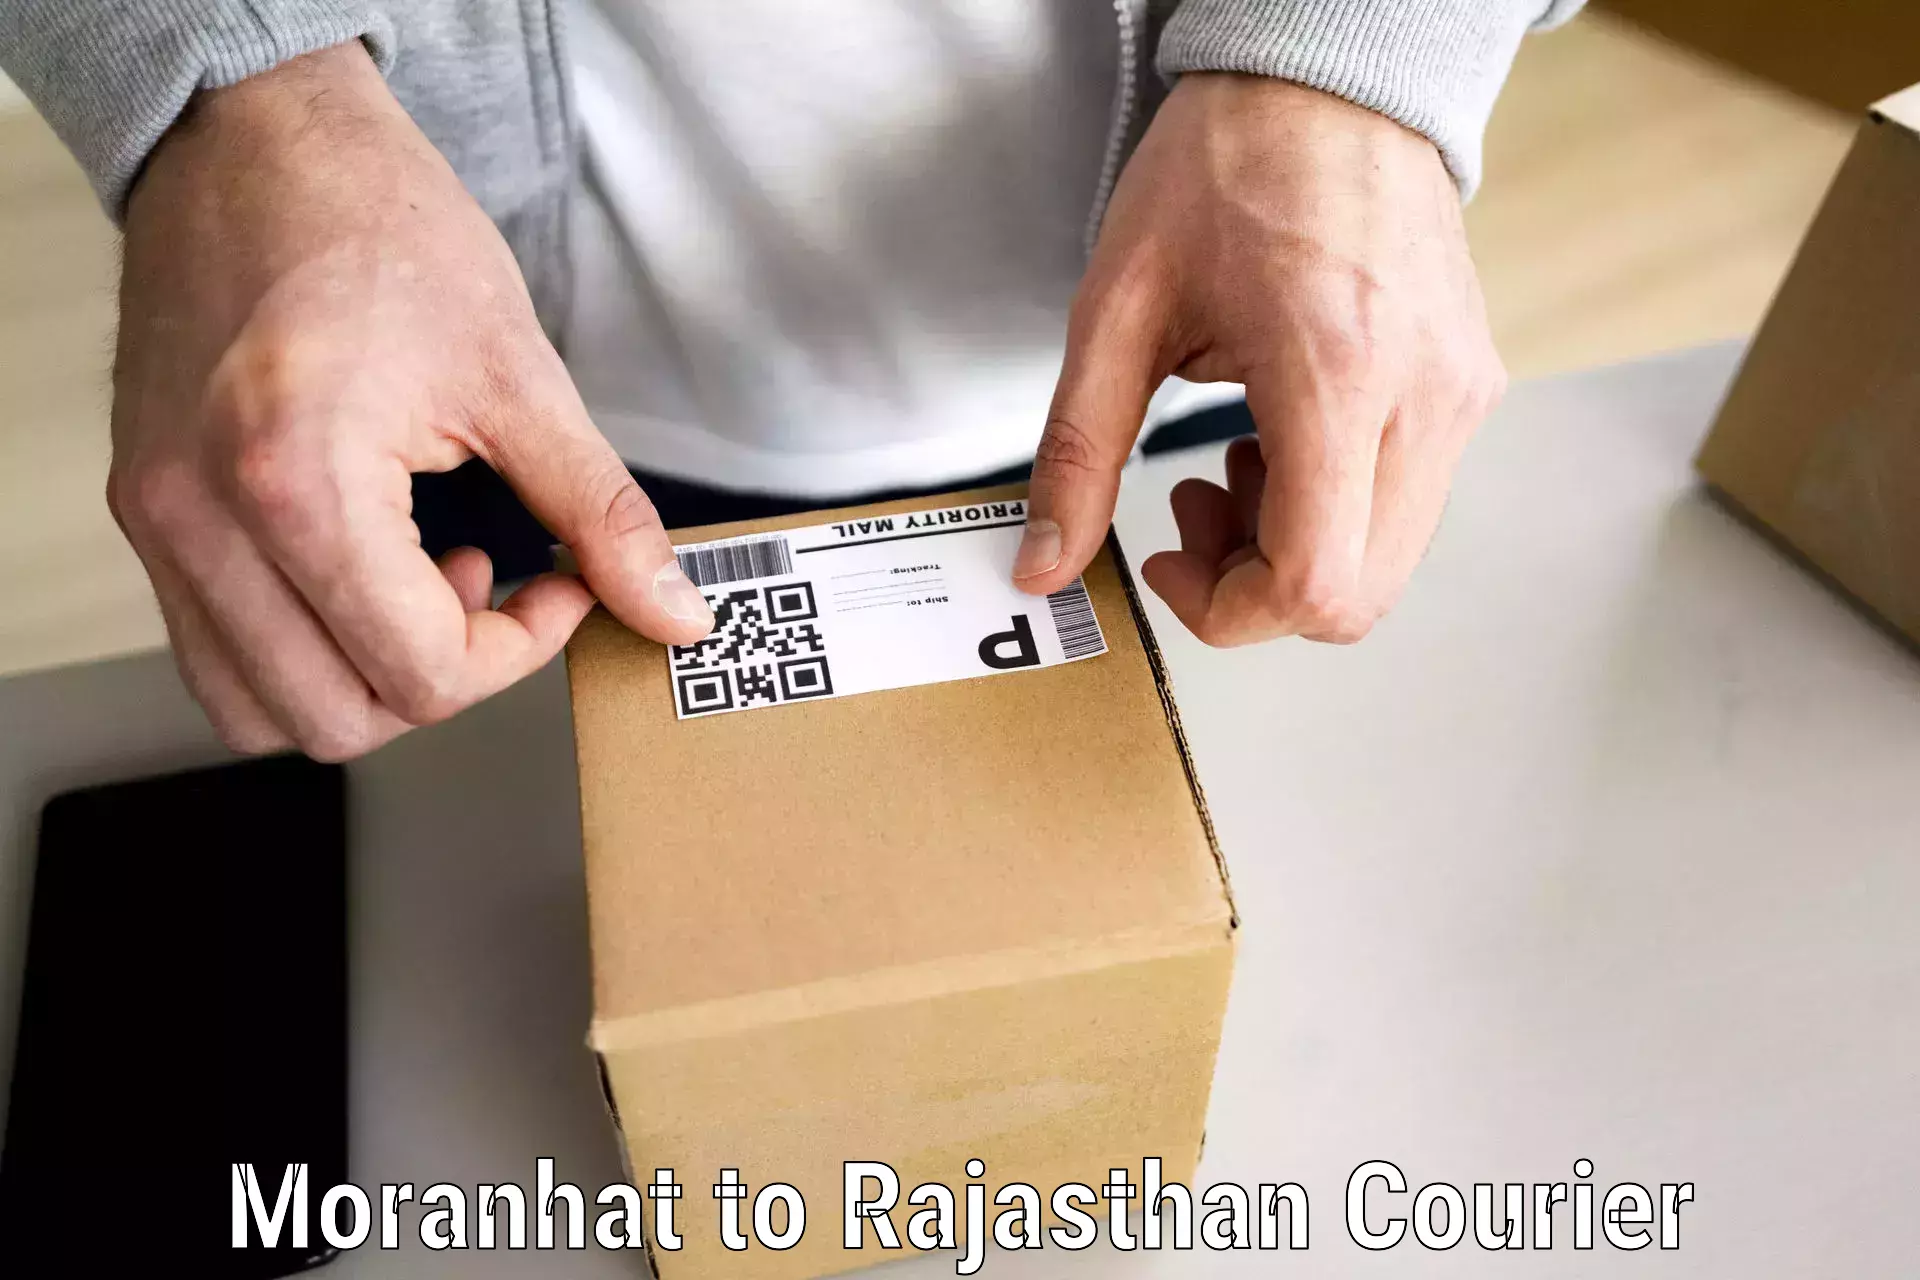 Furniture transport service Moranhat to Rajasthan